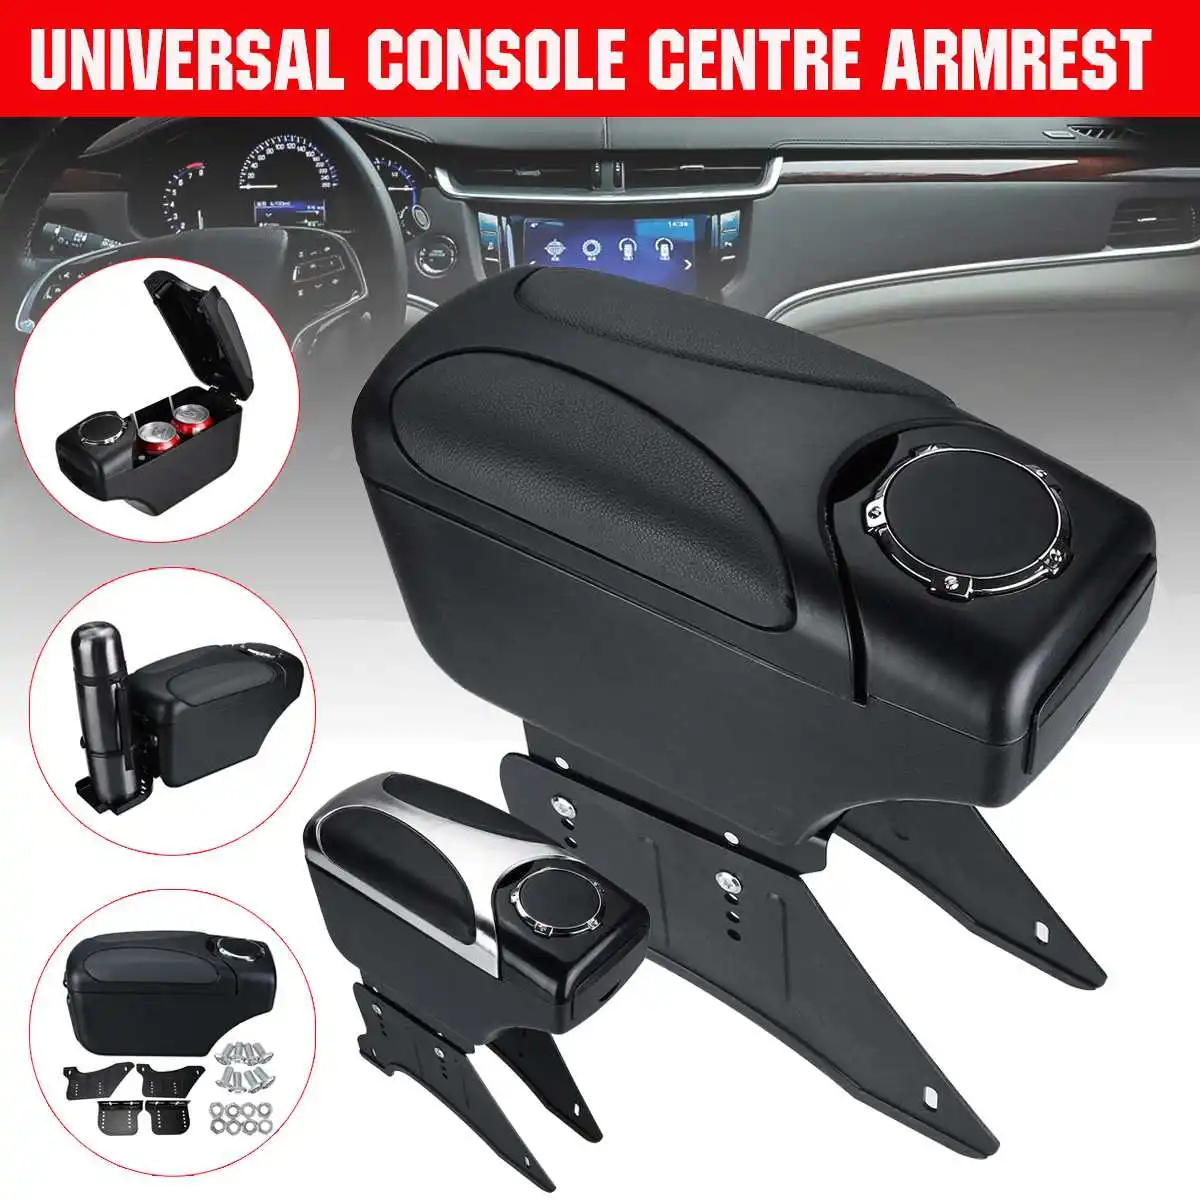 Black Universal Armrest Arm Rest Centre Console For Car Auto Van Bus 